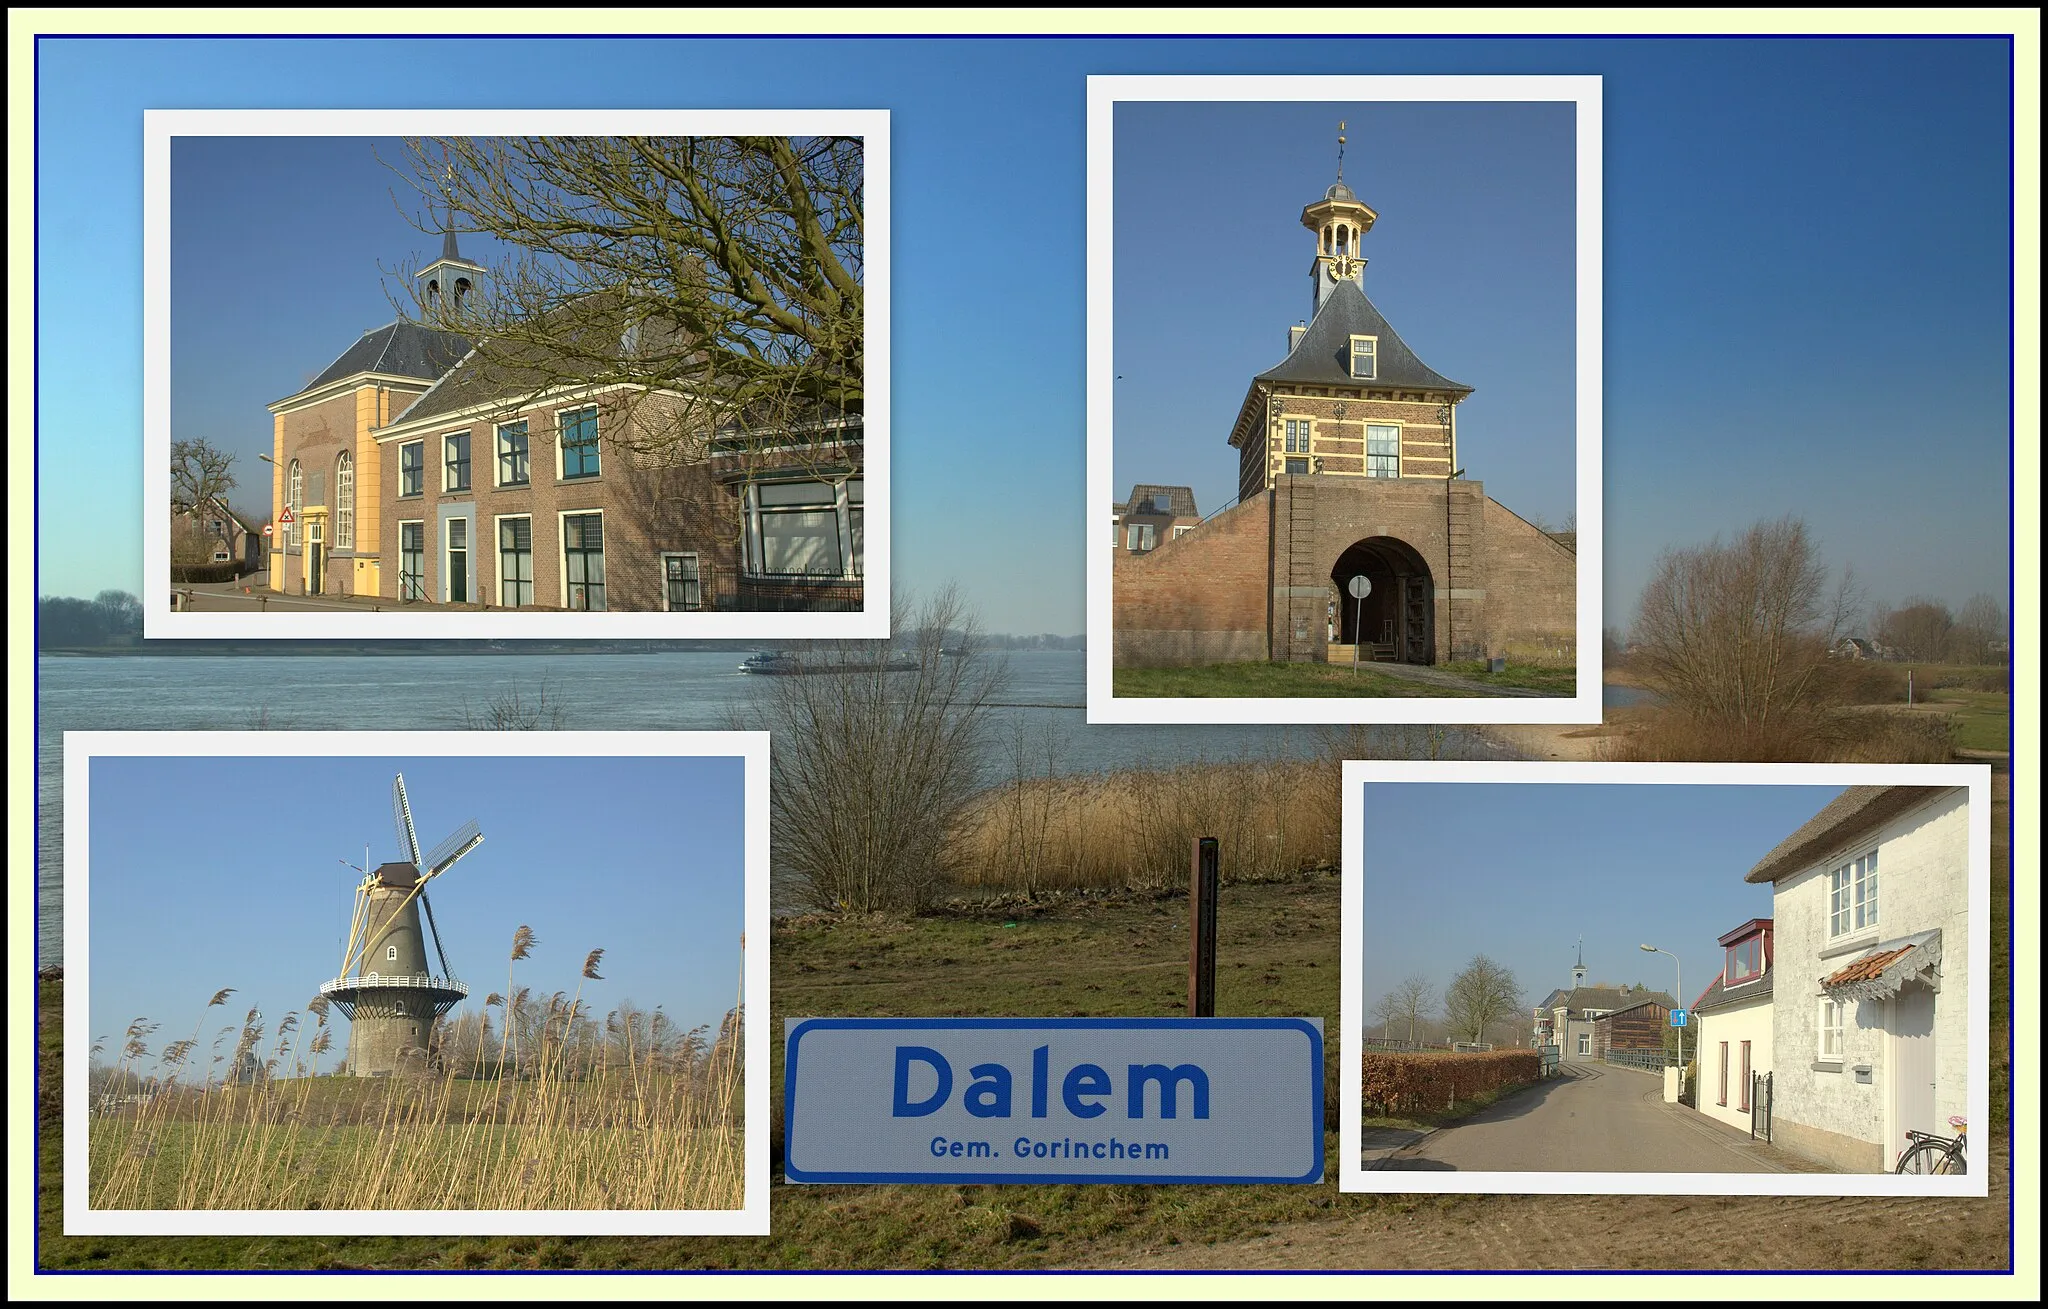 Photo showing: Dalem een dorp in en vlakbij de Gemeente Gorinchem in de Provincie Zuid-Holland. op de plaats waar de Boven-Merwede overgaat in de Waal